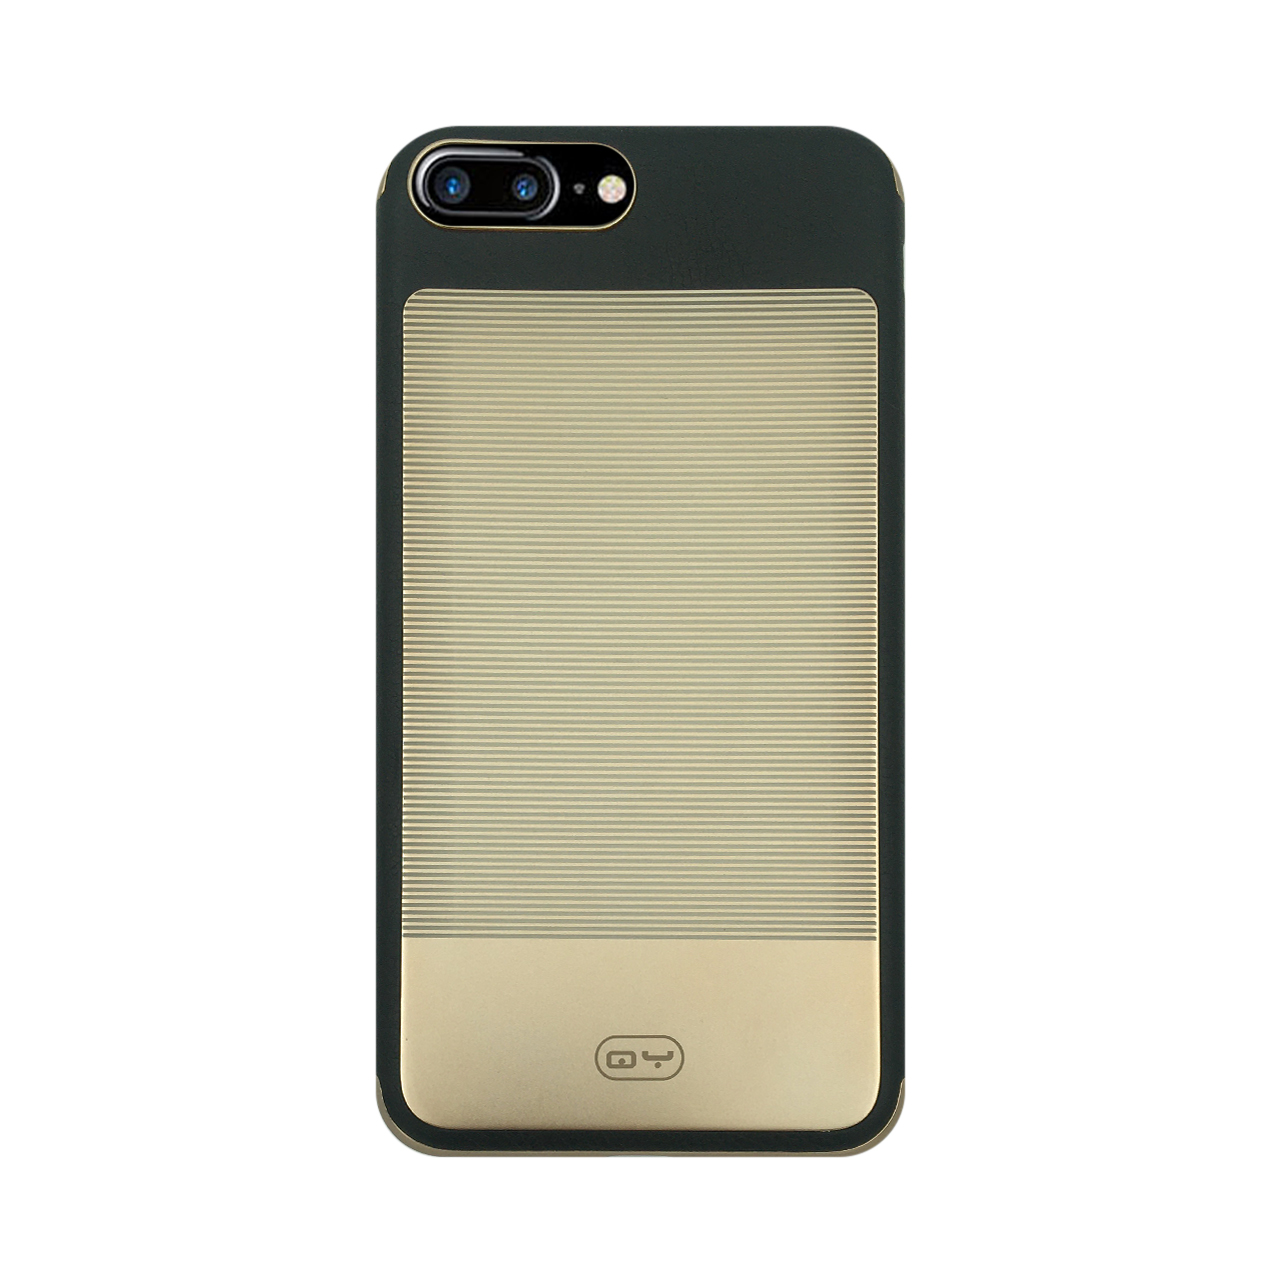 کاور شی یانگ مدل Leather مناسب برای گوشی موبایل اپل iPhone 7 Plus / iPhone 8 Plus